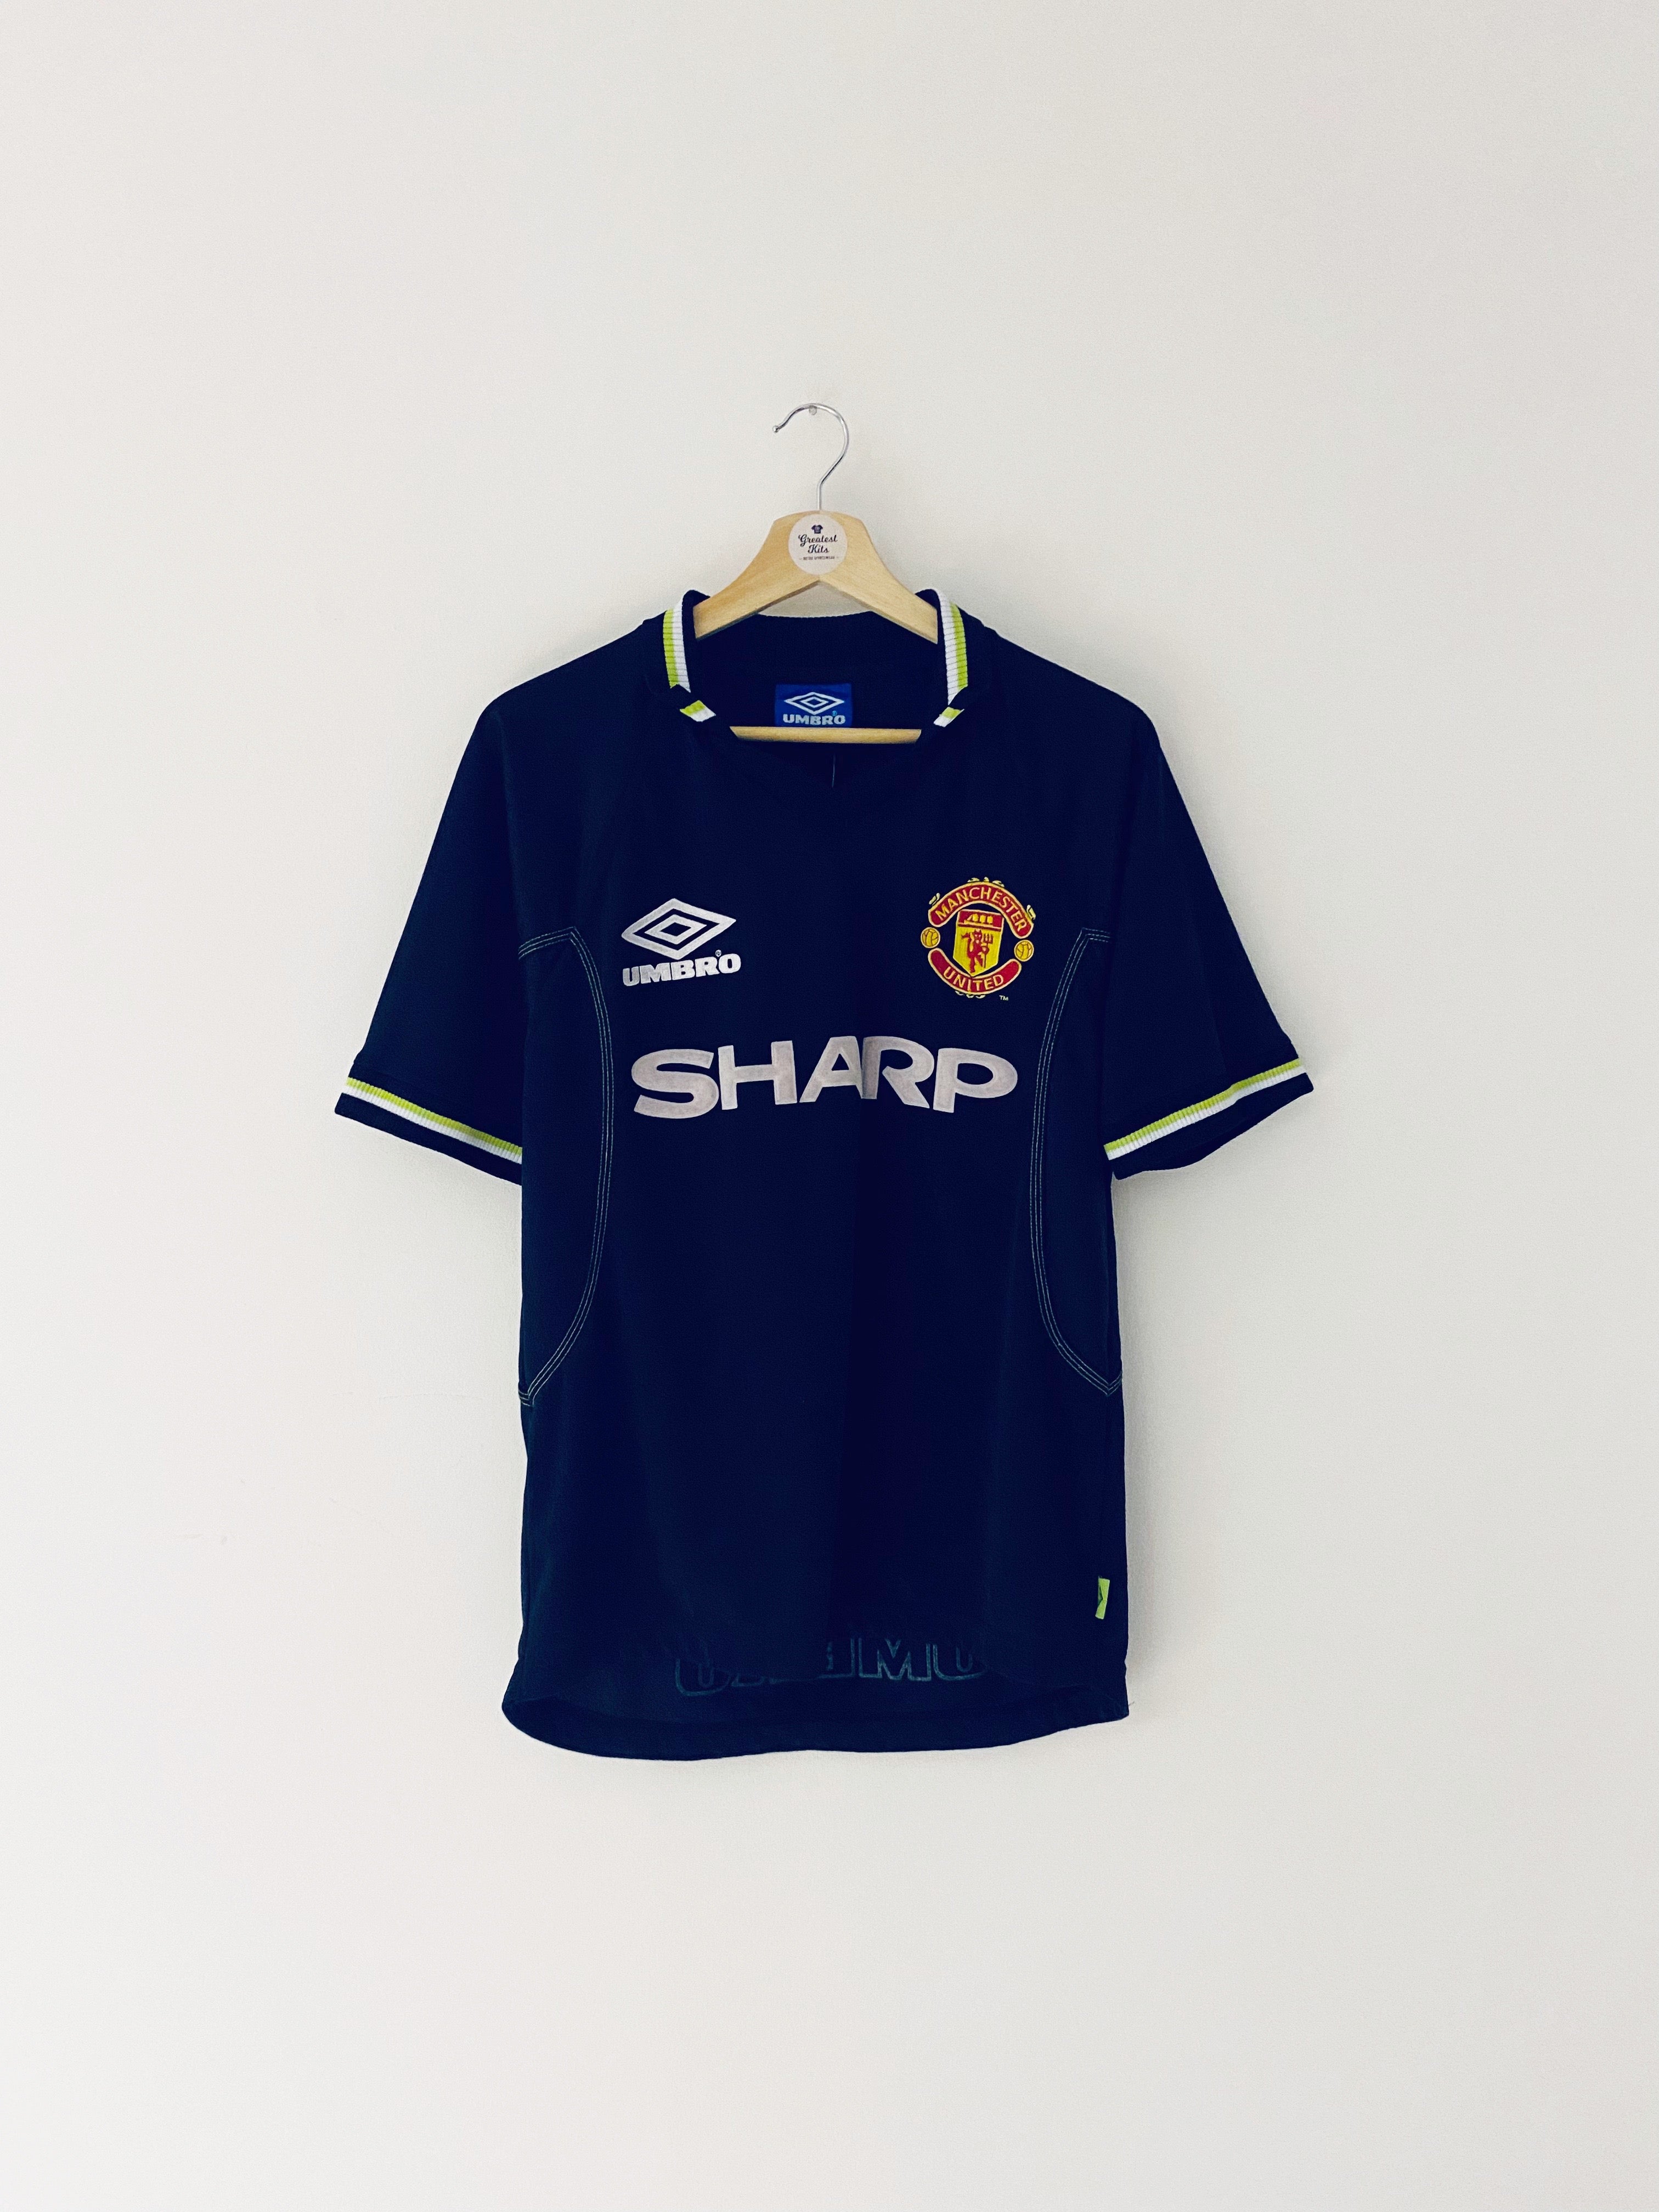 1998/99 Tercera camiseta del Manchester United (Y) 7,5/10